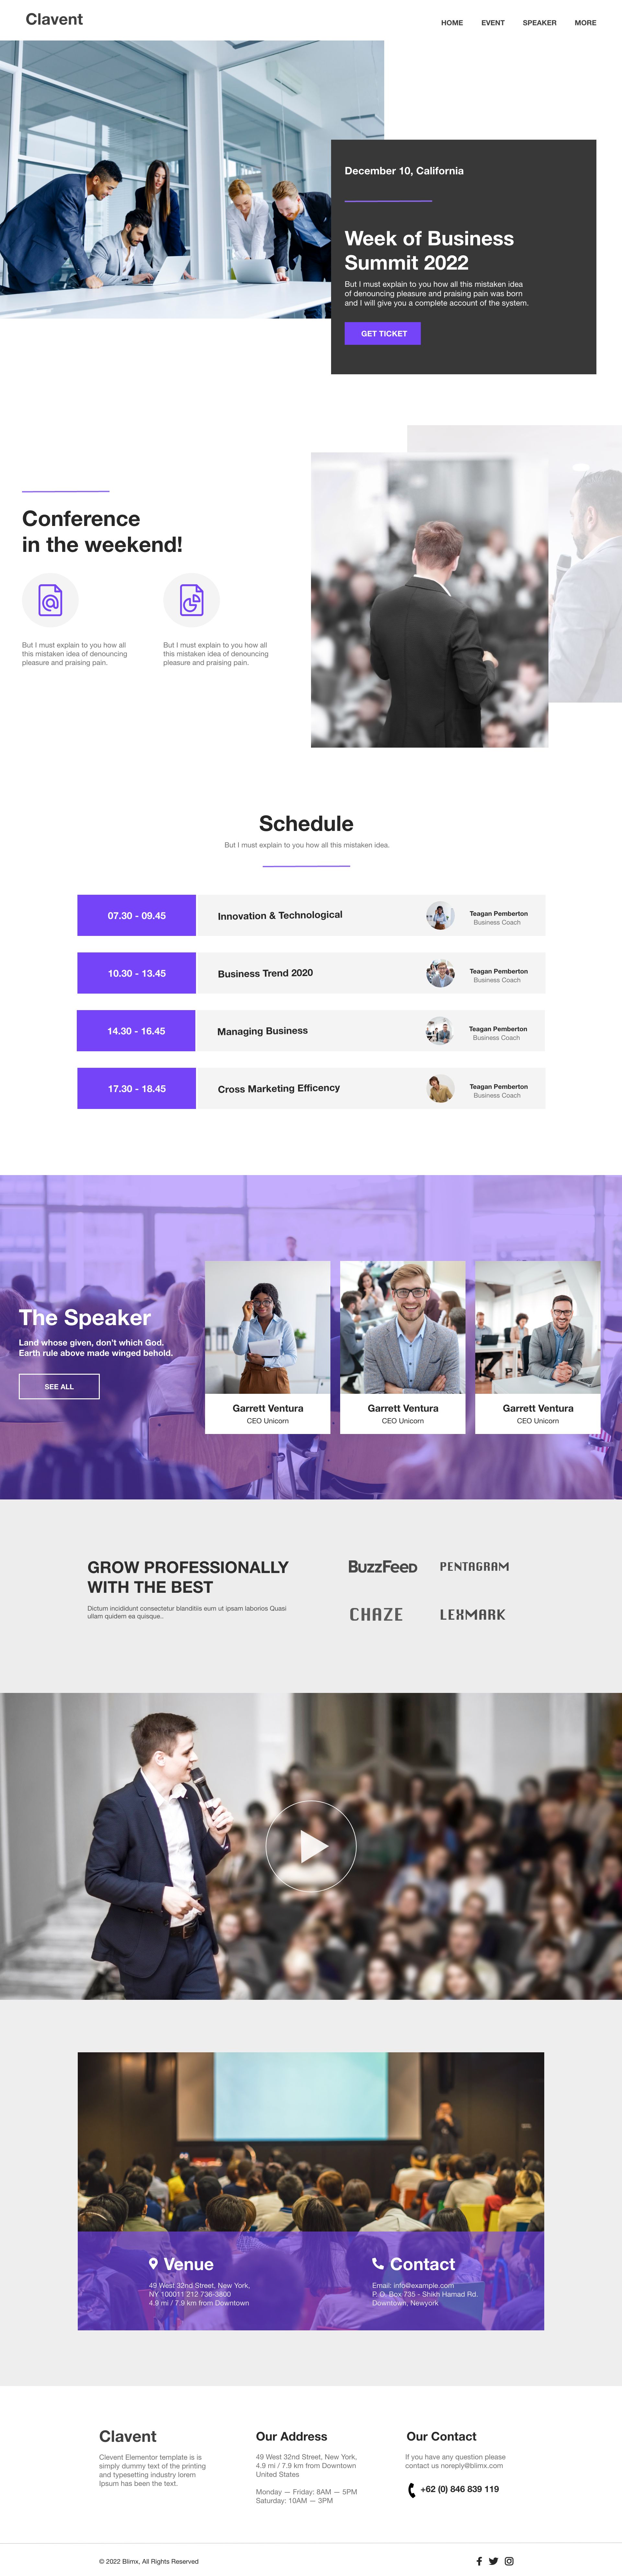 Business Speakers Website Design